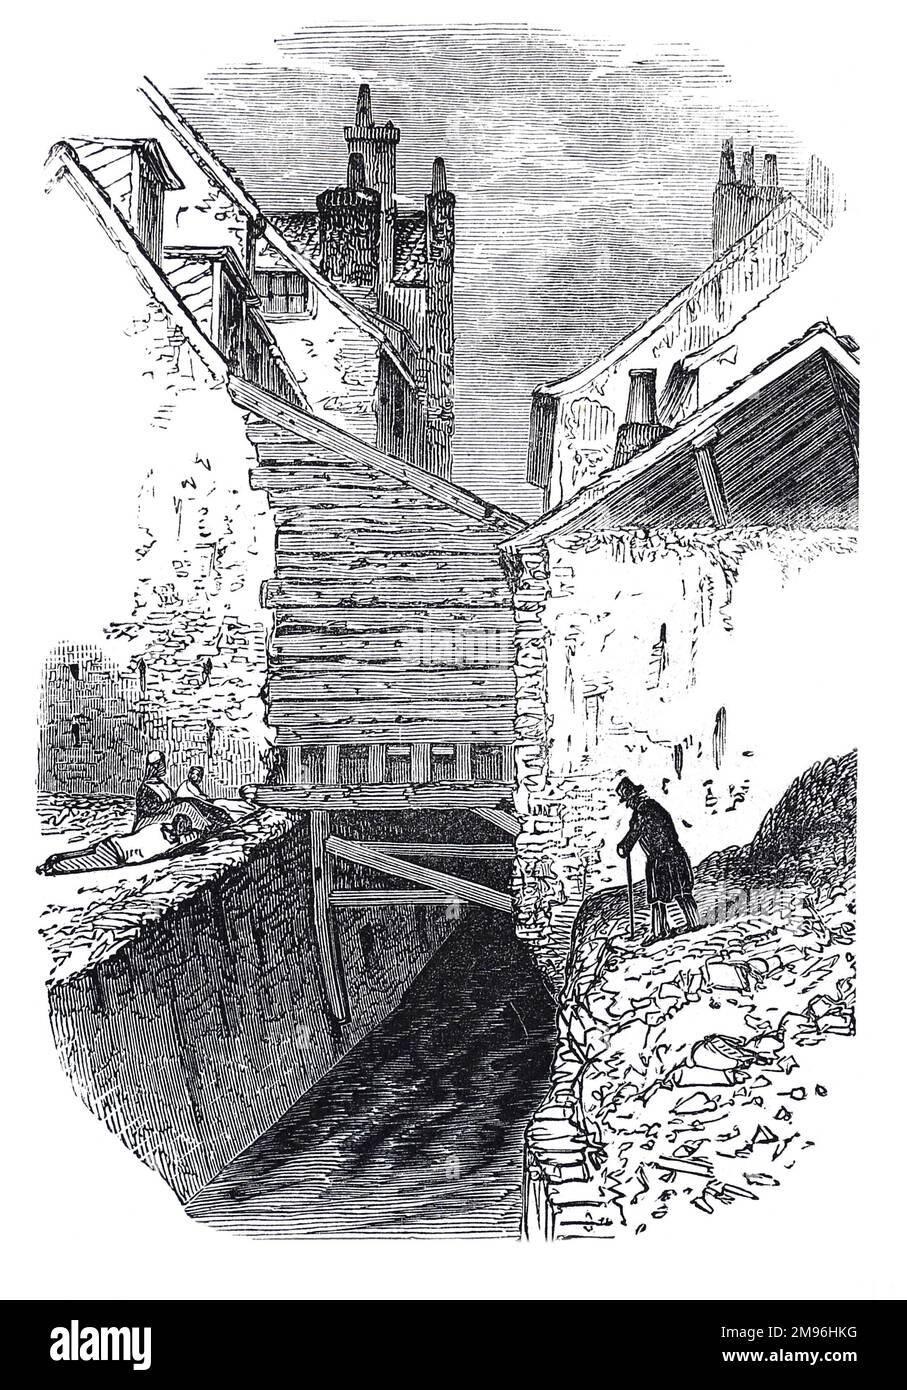 Ancien logement à Clerkenwell, Londres. Illustration en noir et blanc de la London Illustrated News; août 1844. Banque D'Images